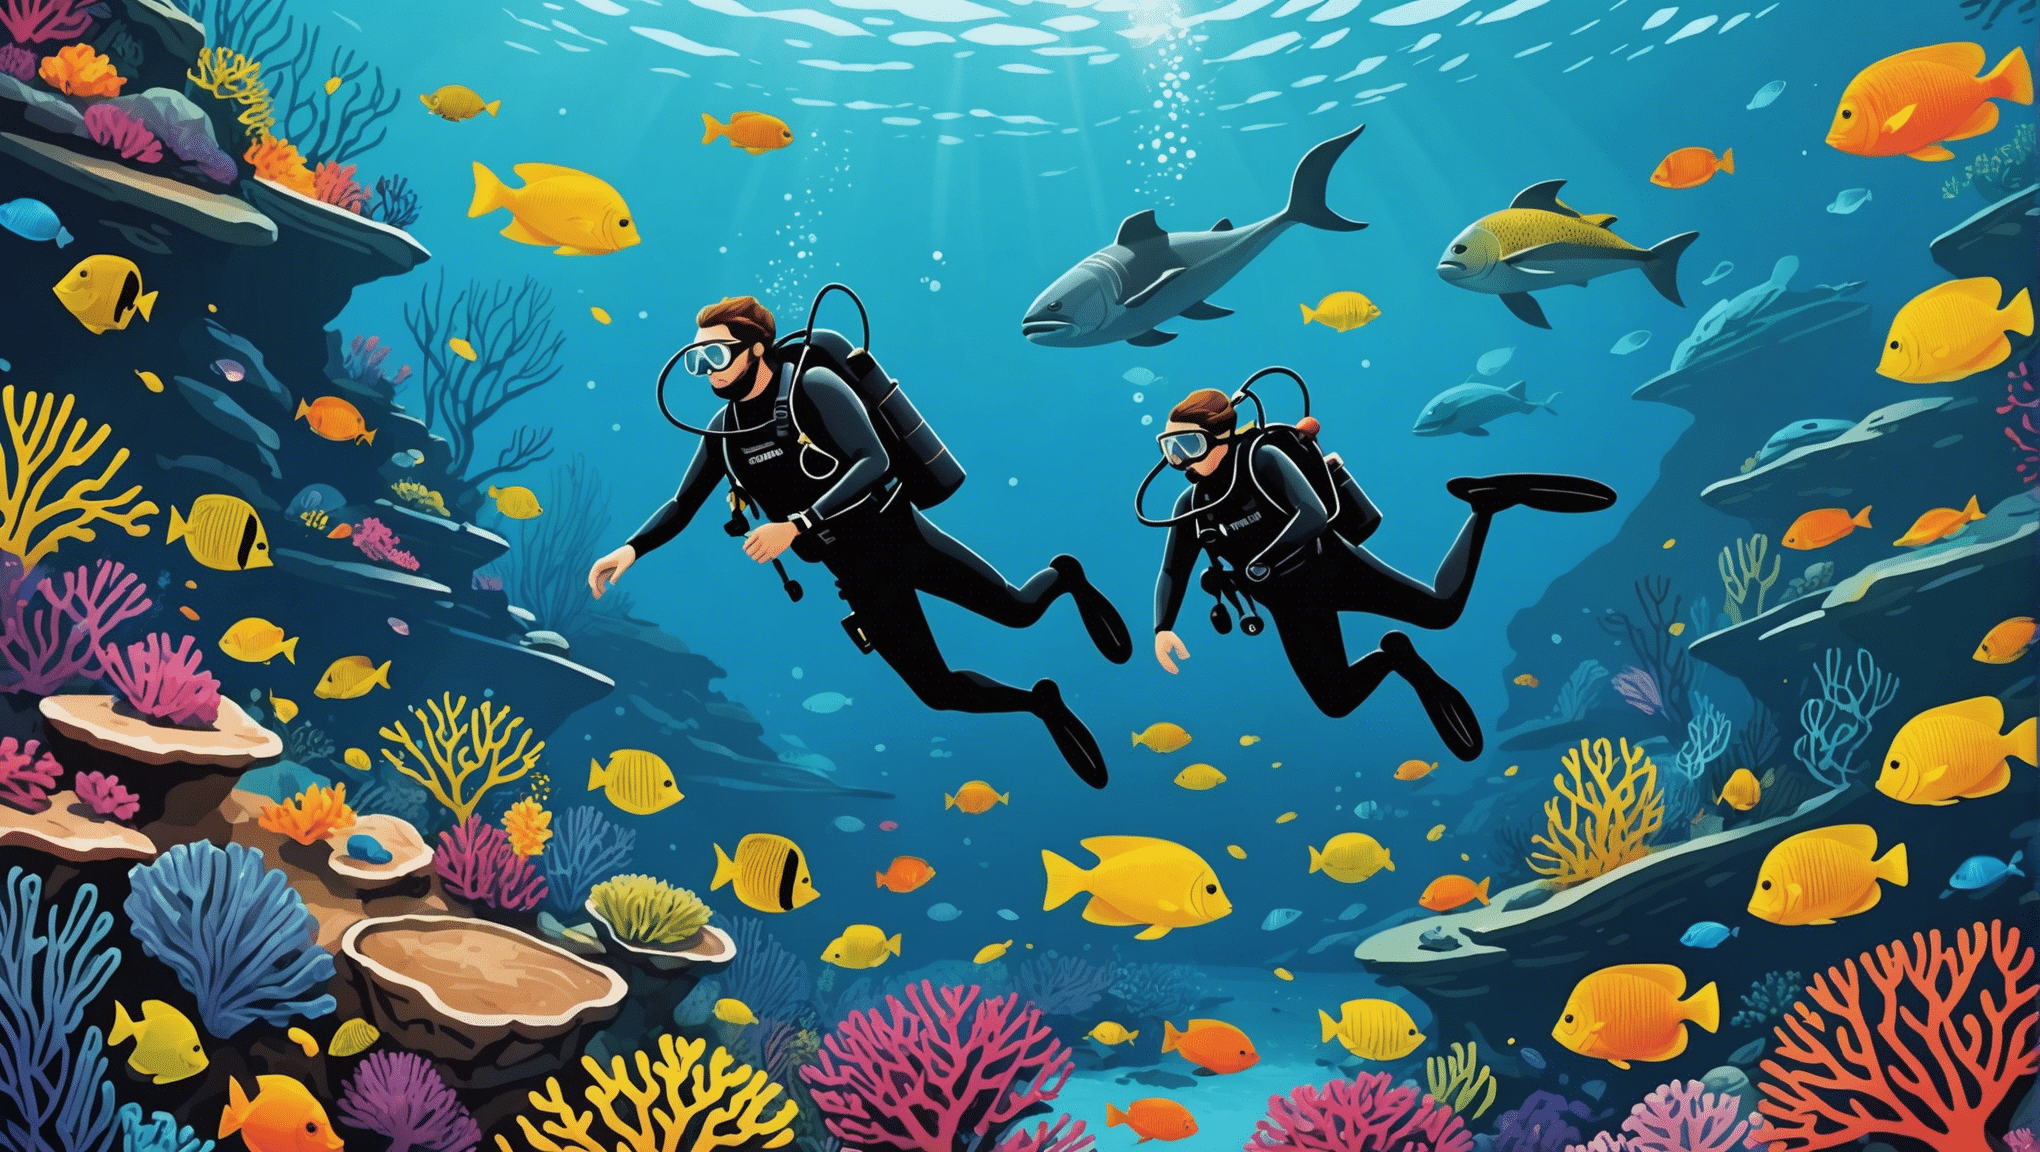 découvrez les meilleurs spots de plongée sous-marine au monde et partez à la rencontre de la beauté sous-marine avec nos destinations incontournables.